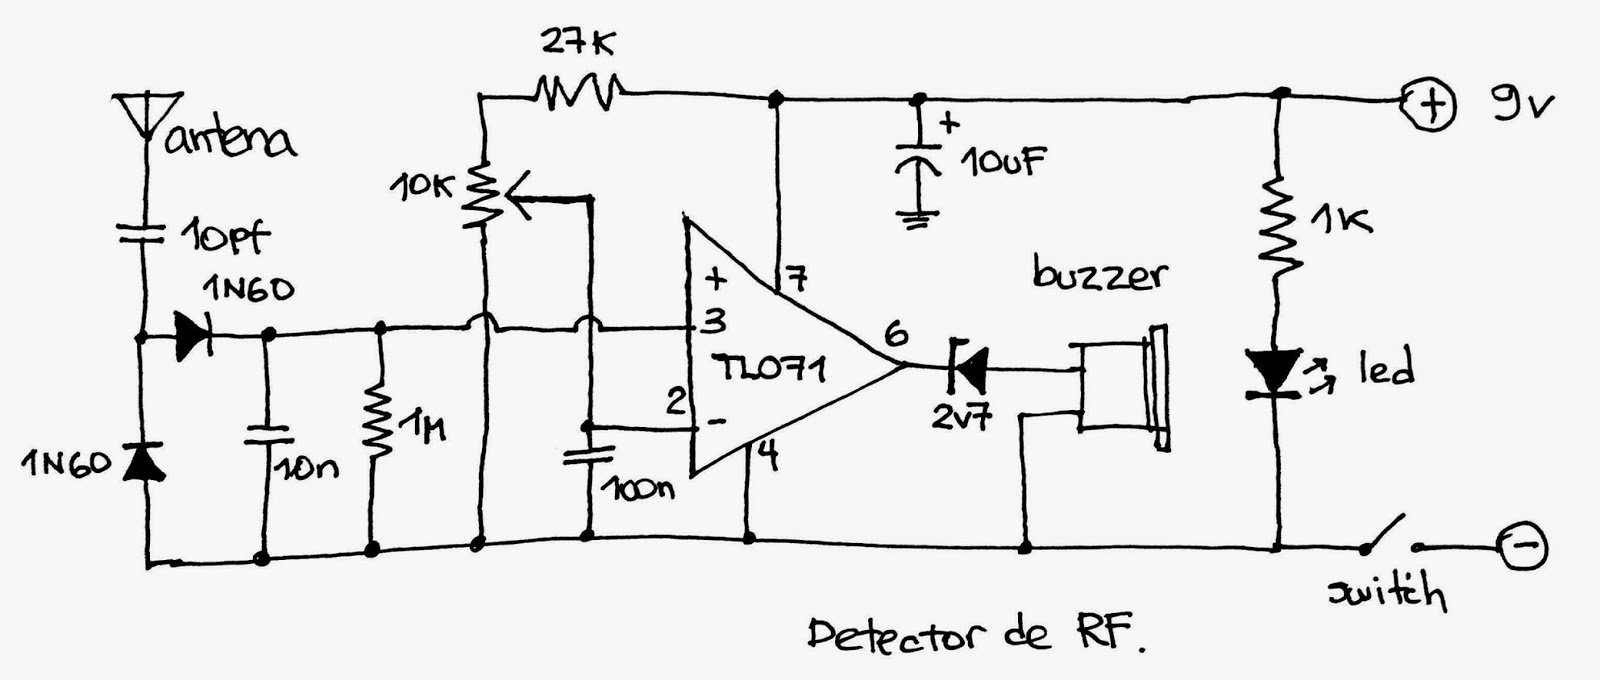 Insecto muerto: Detector de RF